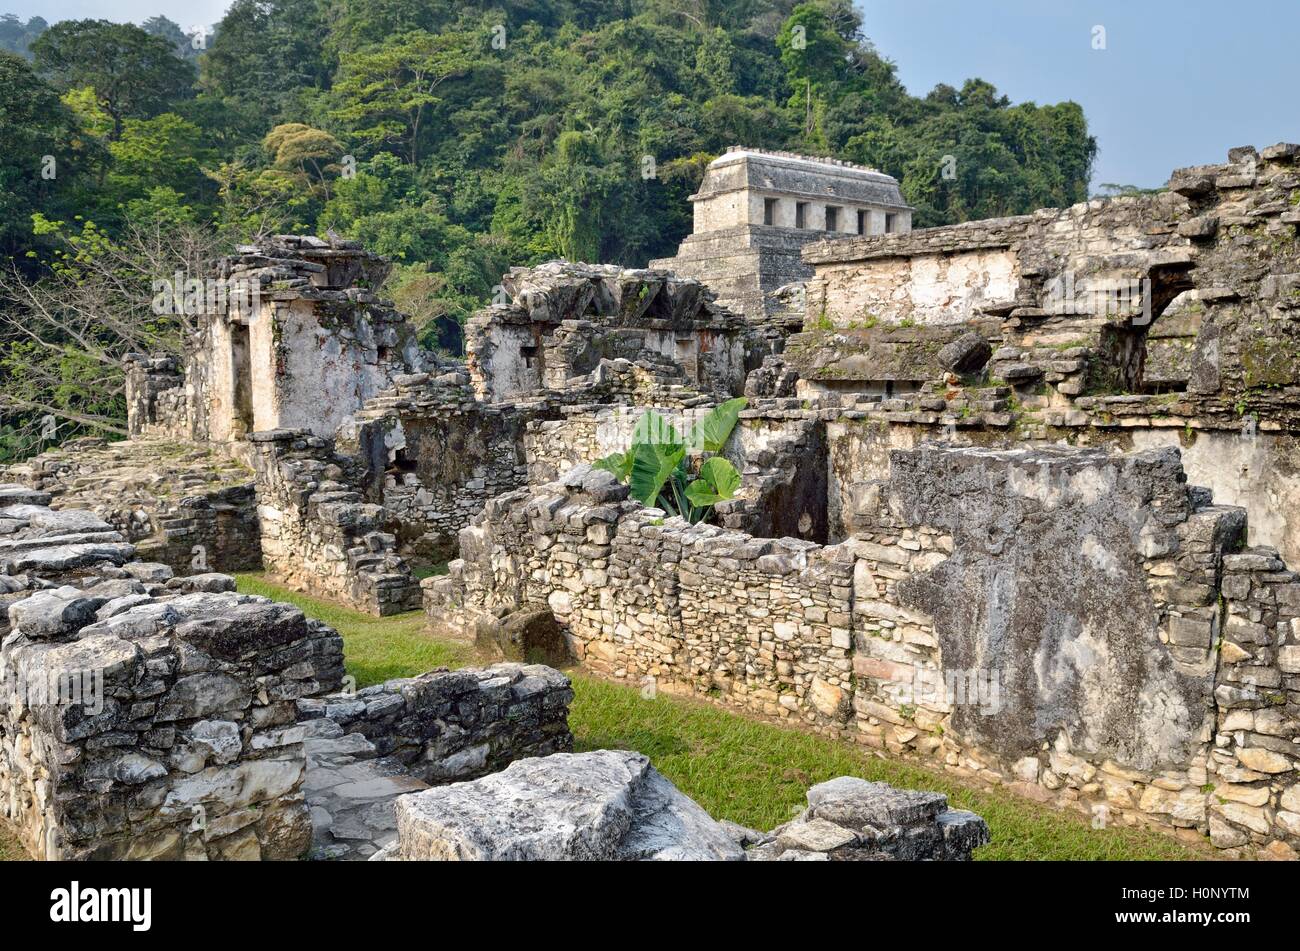 El Palacio, partial view, Temple of Inscriptions behind, Mayan ruins of Palenque, Chiapas, Mexico Stock Photo